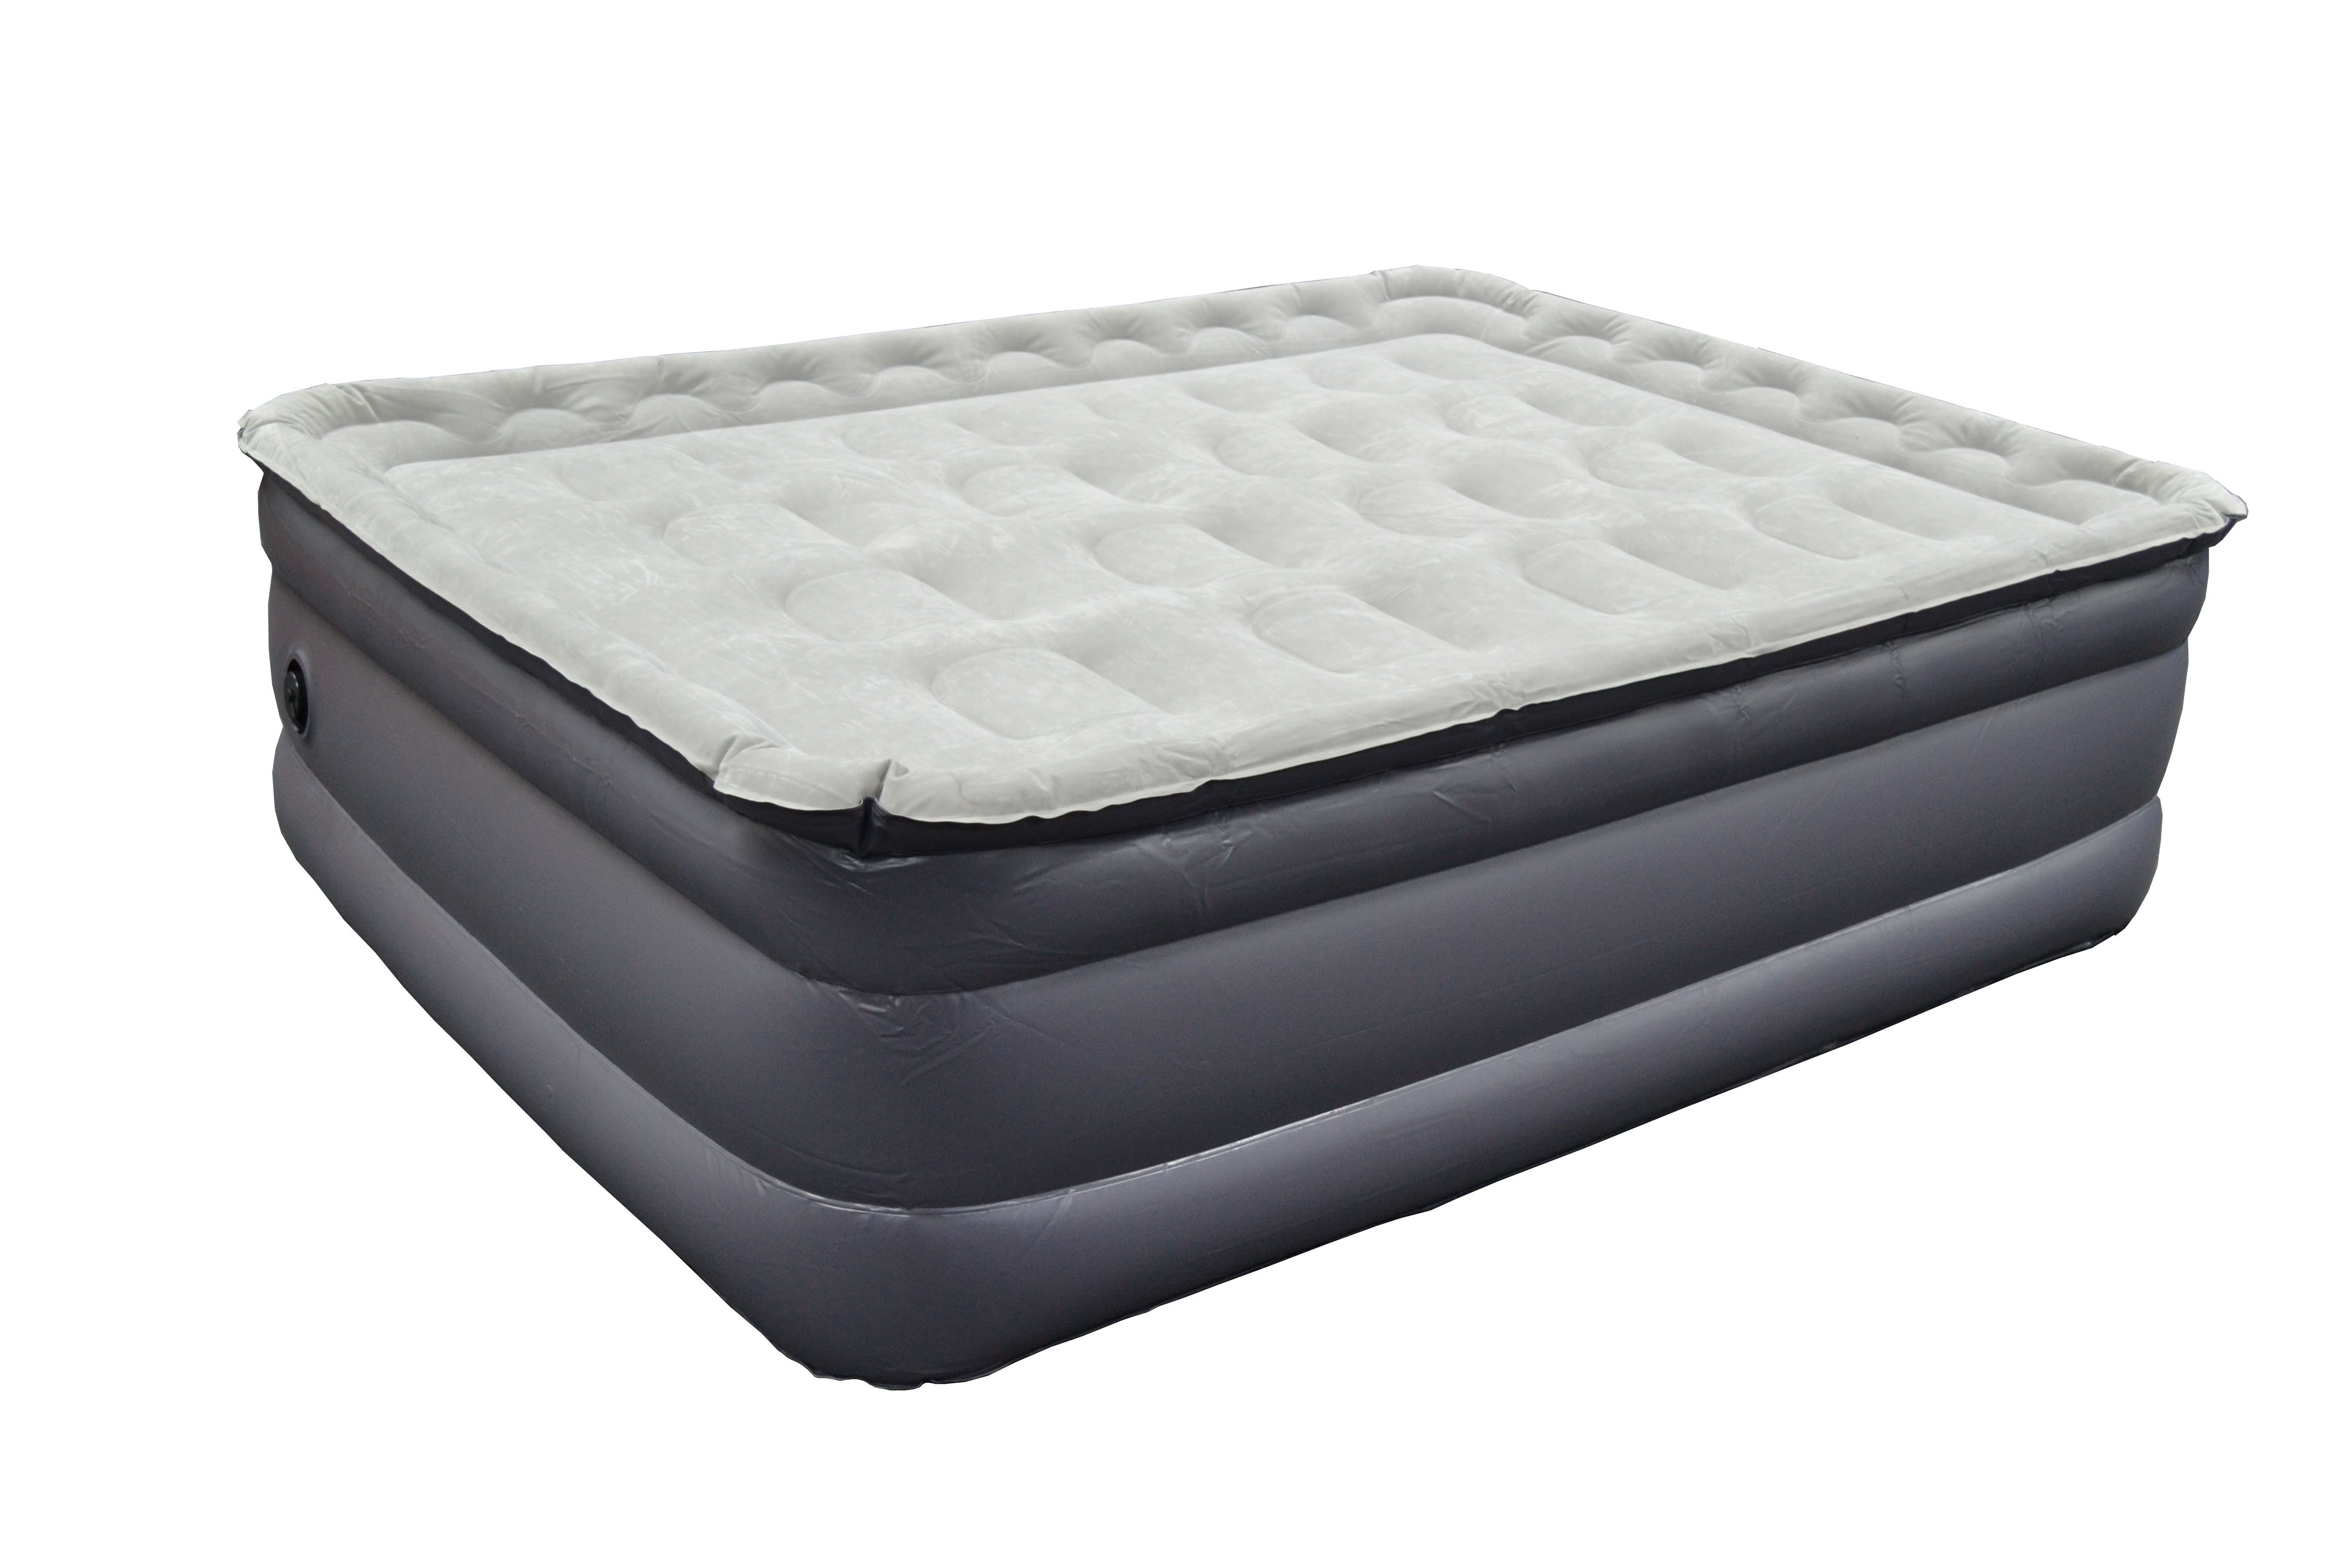 flocked air mattress queen bed review